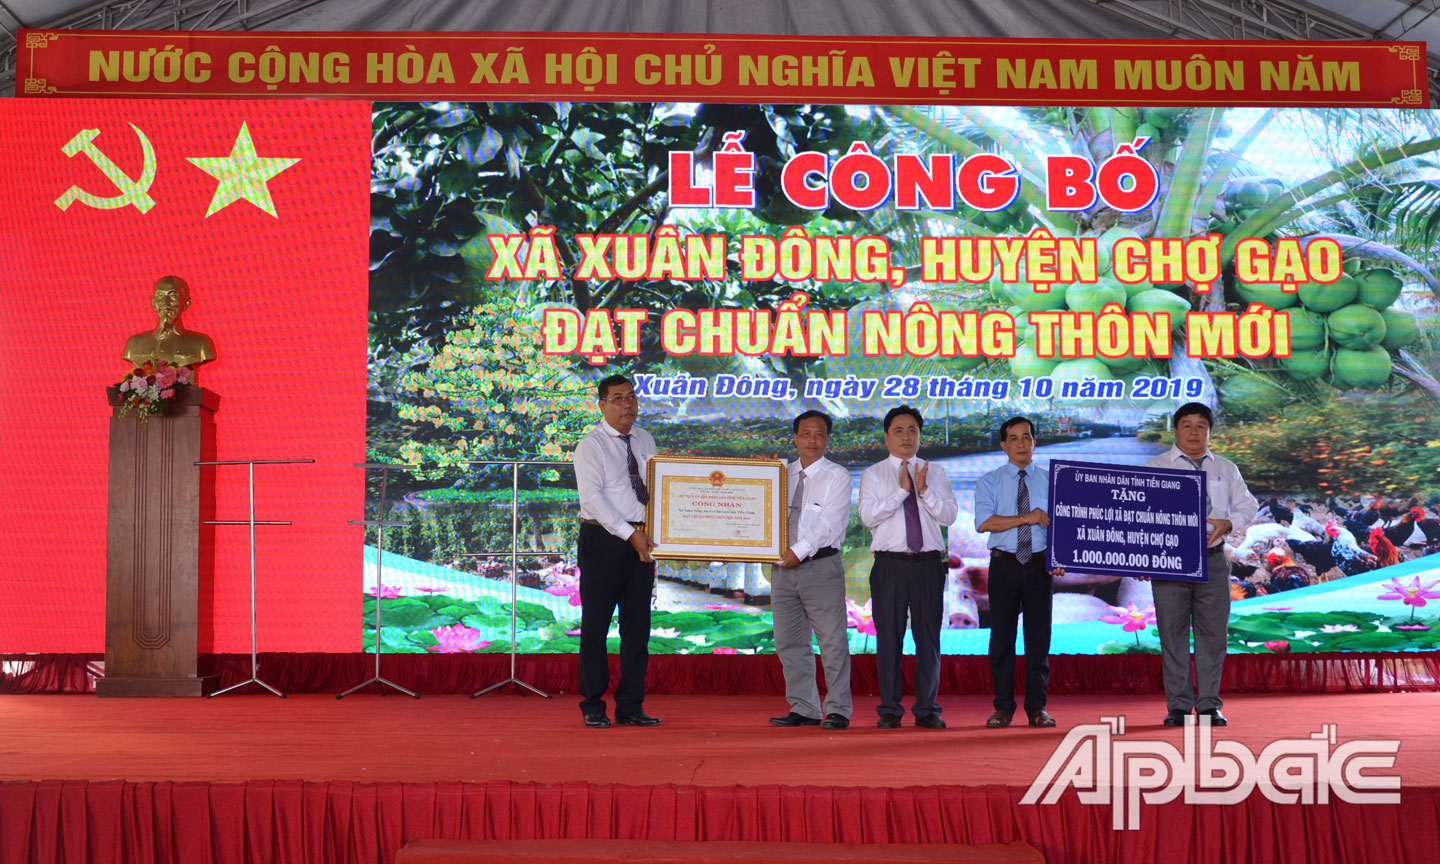 Phó Chủ tịch UBND tỉnh Trần Văn Dũng trao Bằng công nhận xã Xuân Đông đạt chuẩn NTM và bảng tượng trưng công trình phúc lợi.